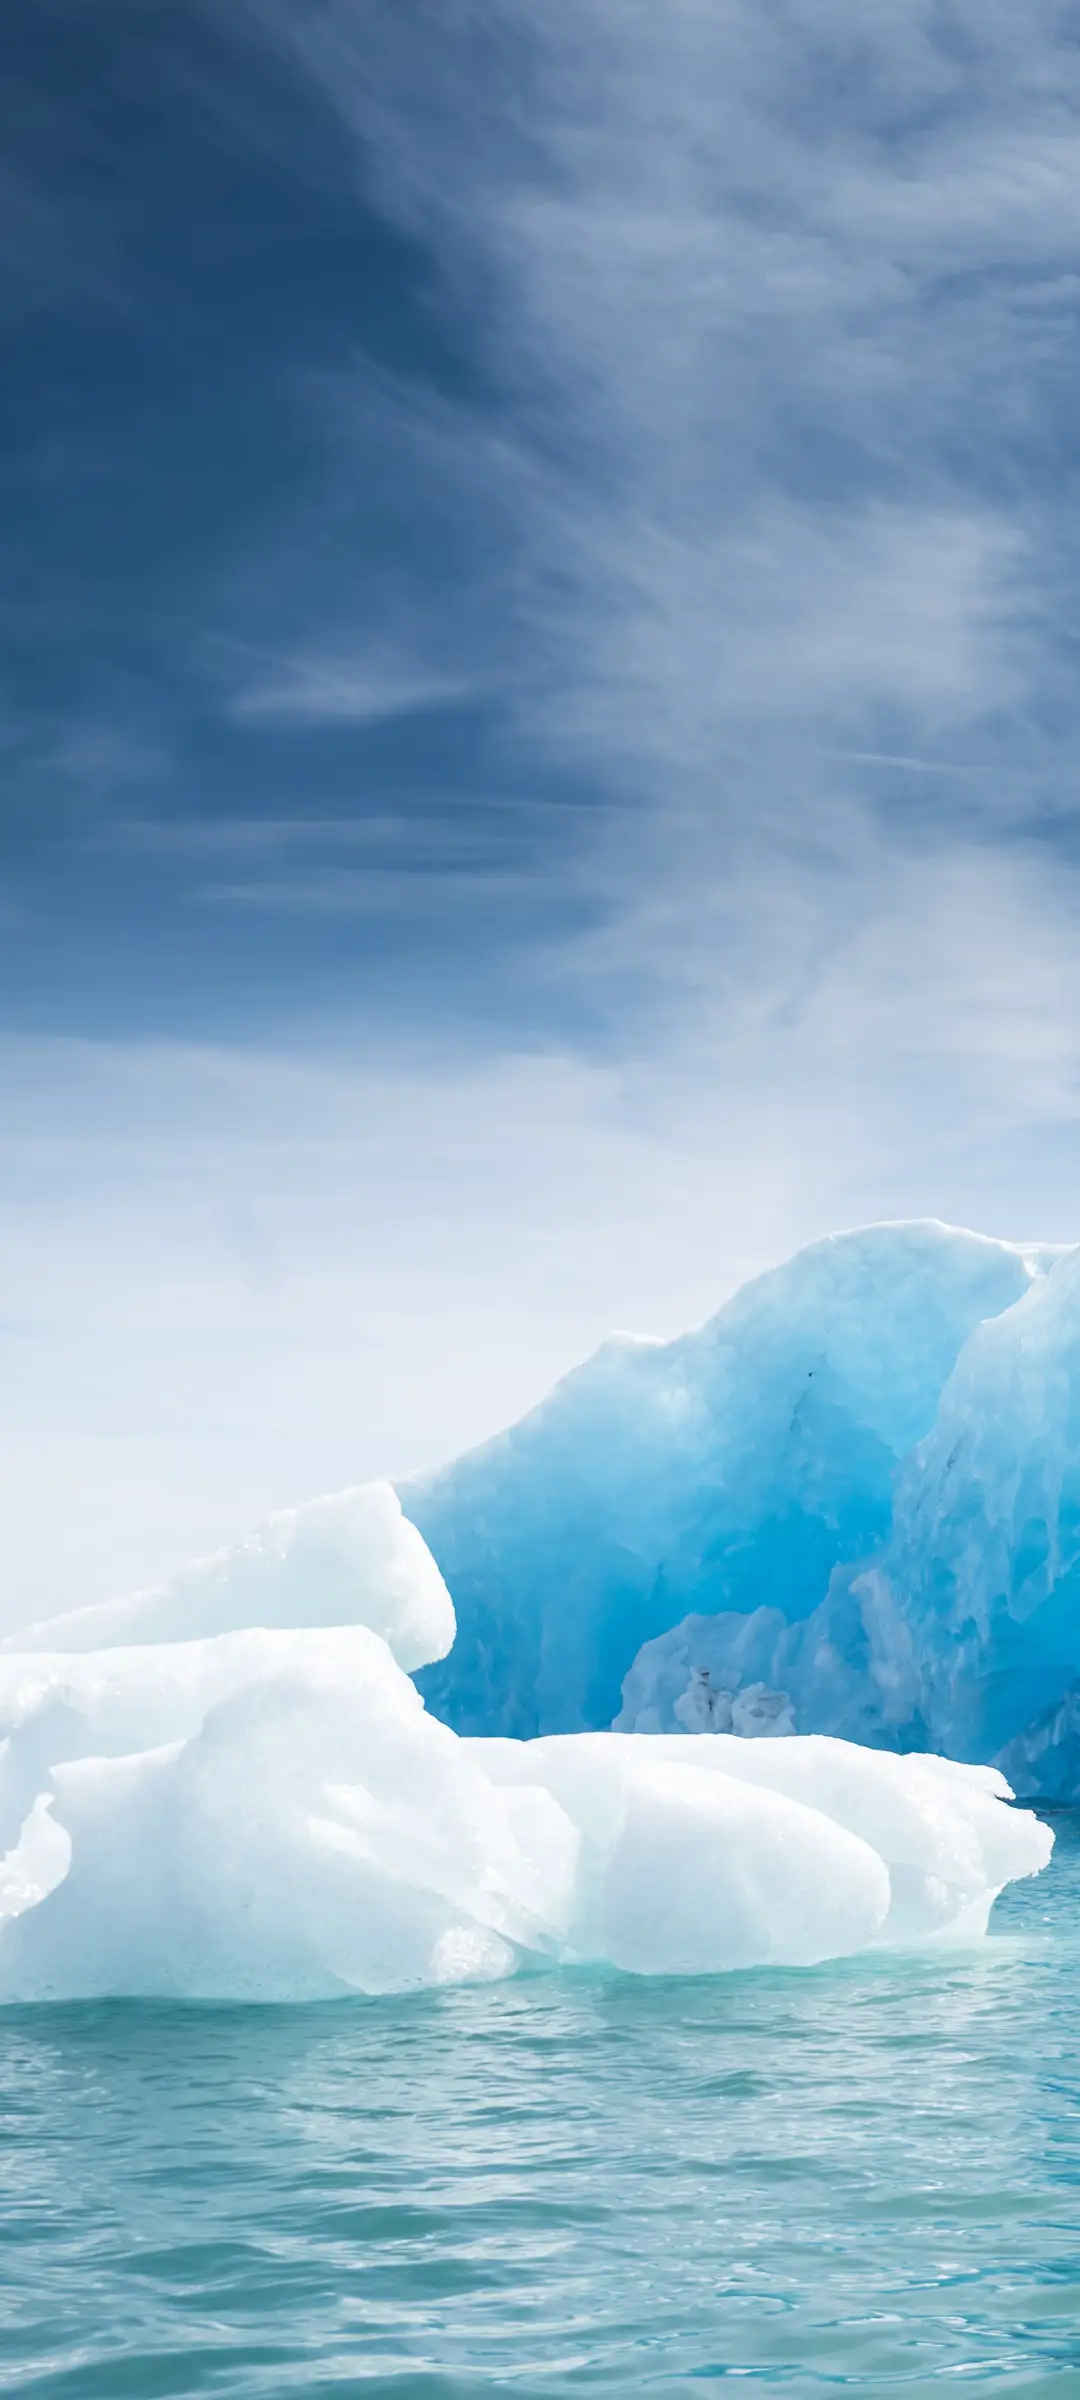 蓝天白云下的晶莹一半水面一半海里冰山唯美风景手机壁纸